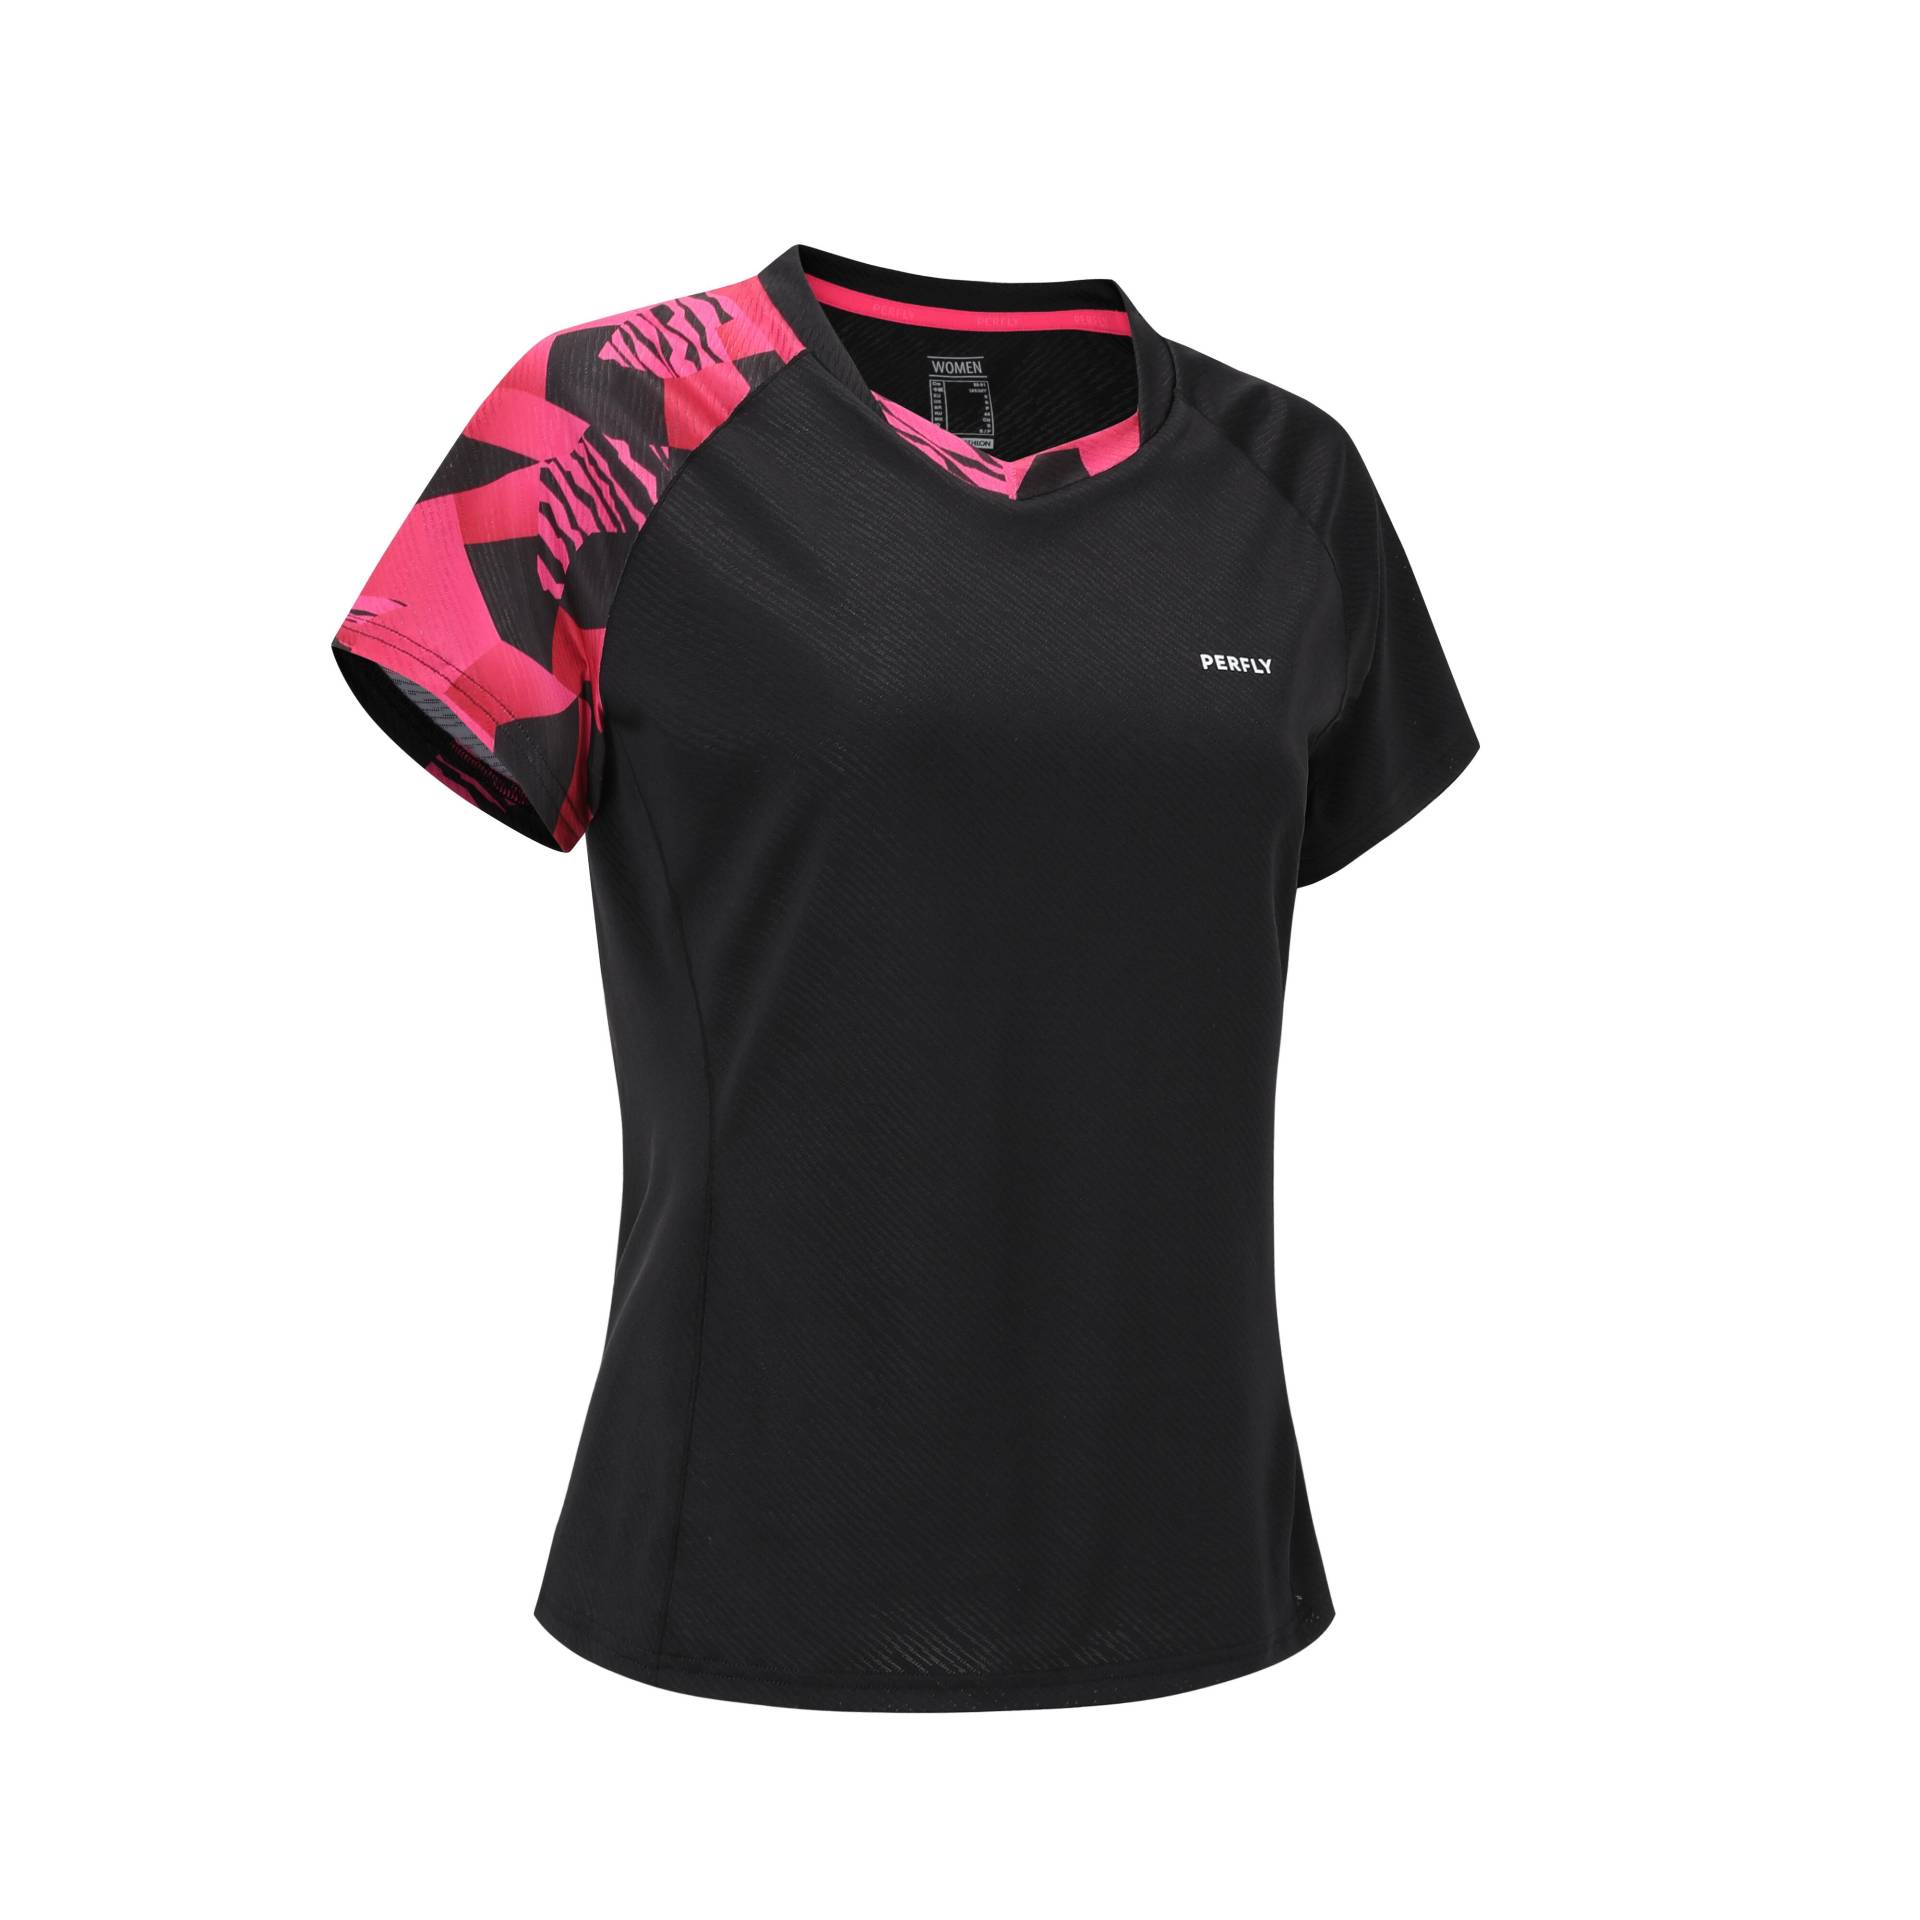 Damen Badminton T-Shirt - 560 schwarz/neon von PERFLY